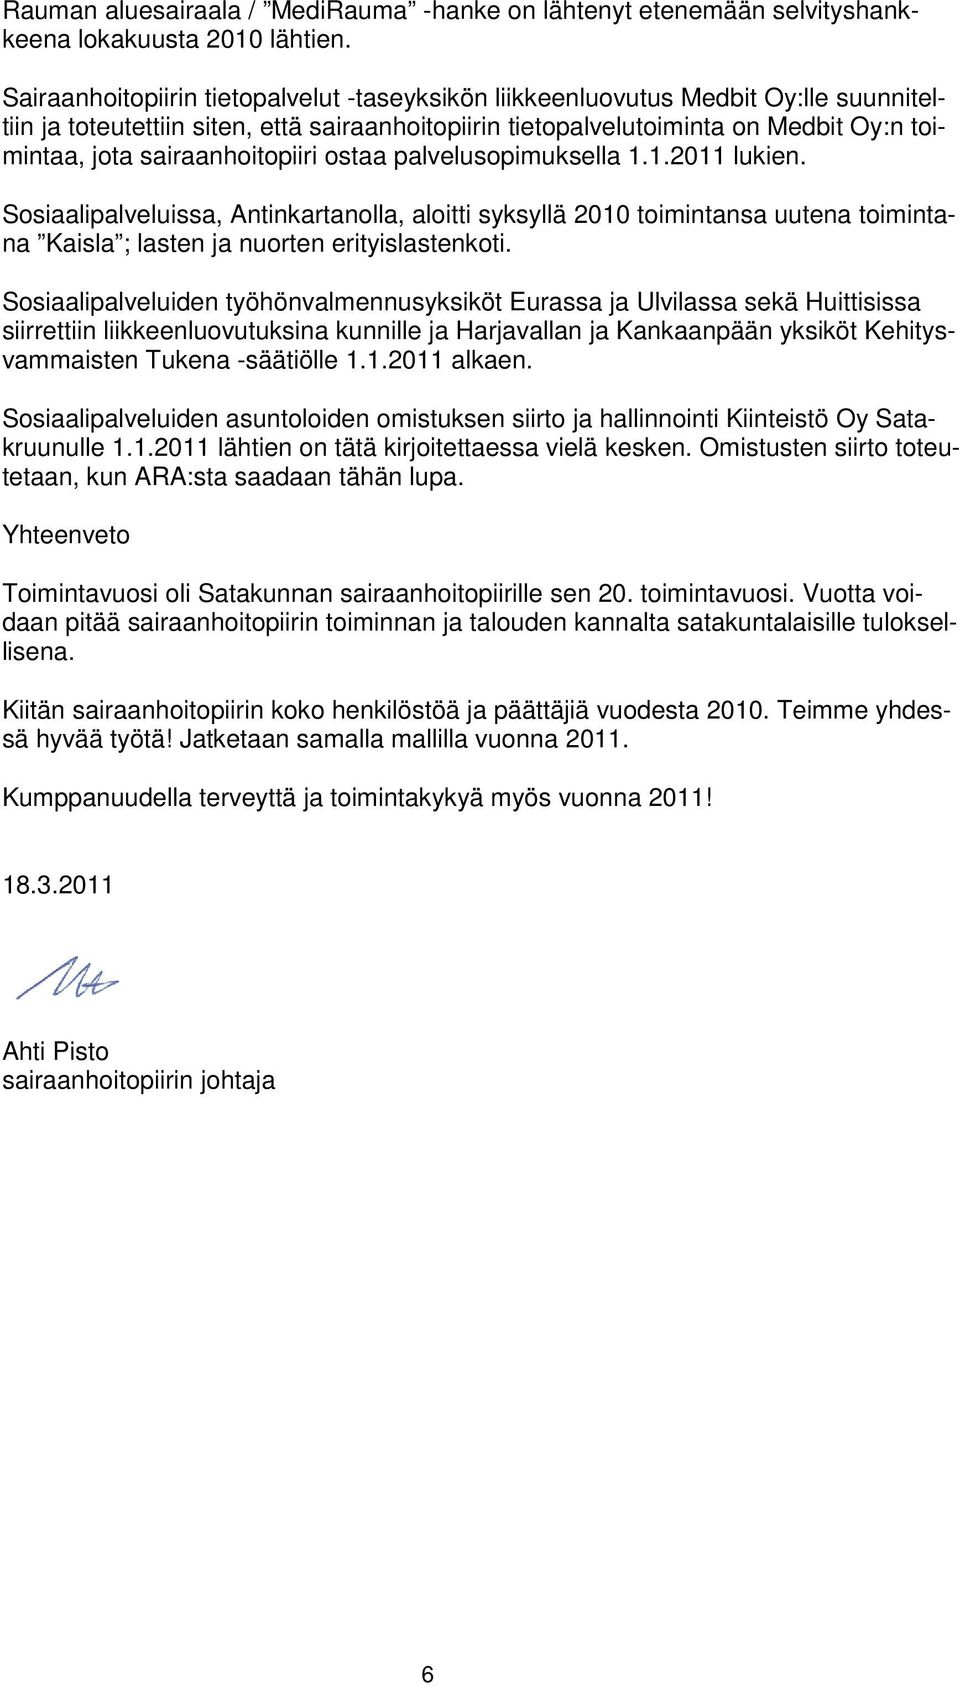 sairaanhoitopiiri ostaa palvelusopimuksella 1.1.2011 lukien. Sosiaalipalveluissa, Antinkartanolla, aloitti syksyllä 2010 toimintansa uutena toimintana Kaisla ; lasten ja nuorten erityislastenkoti.